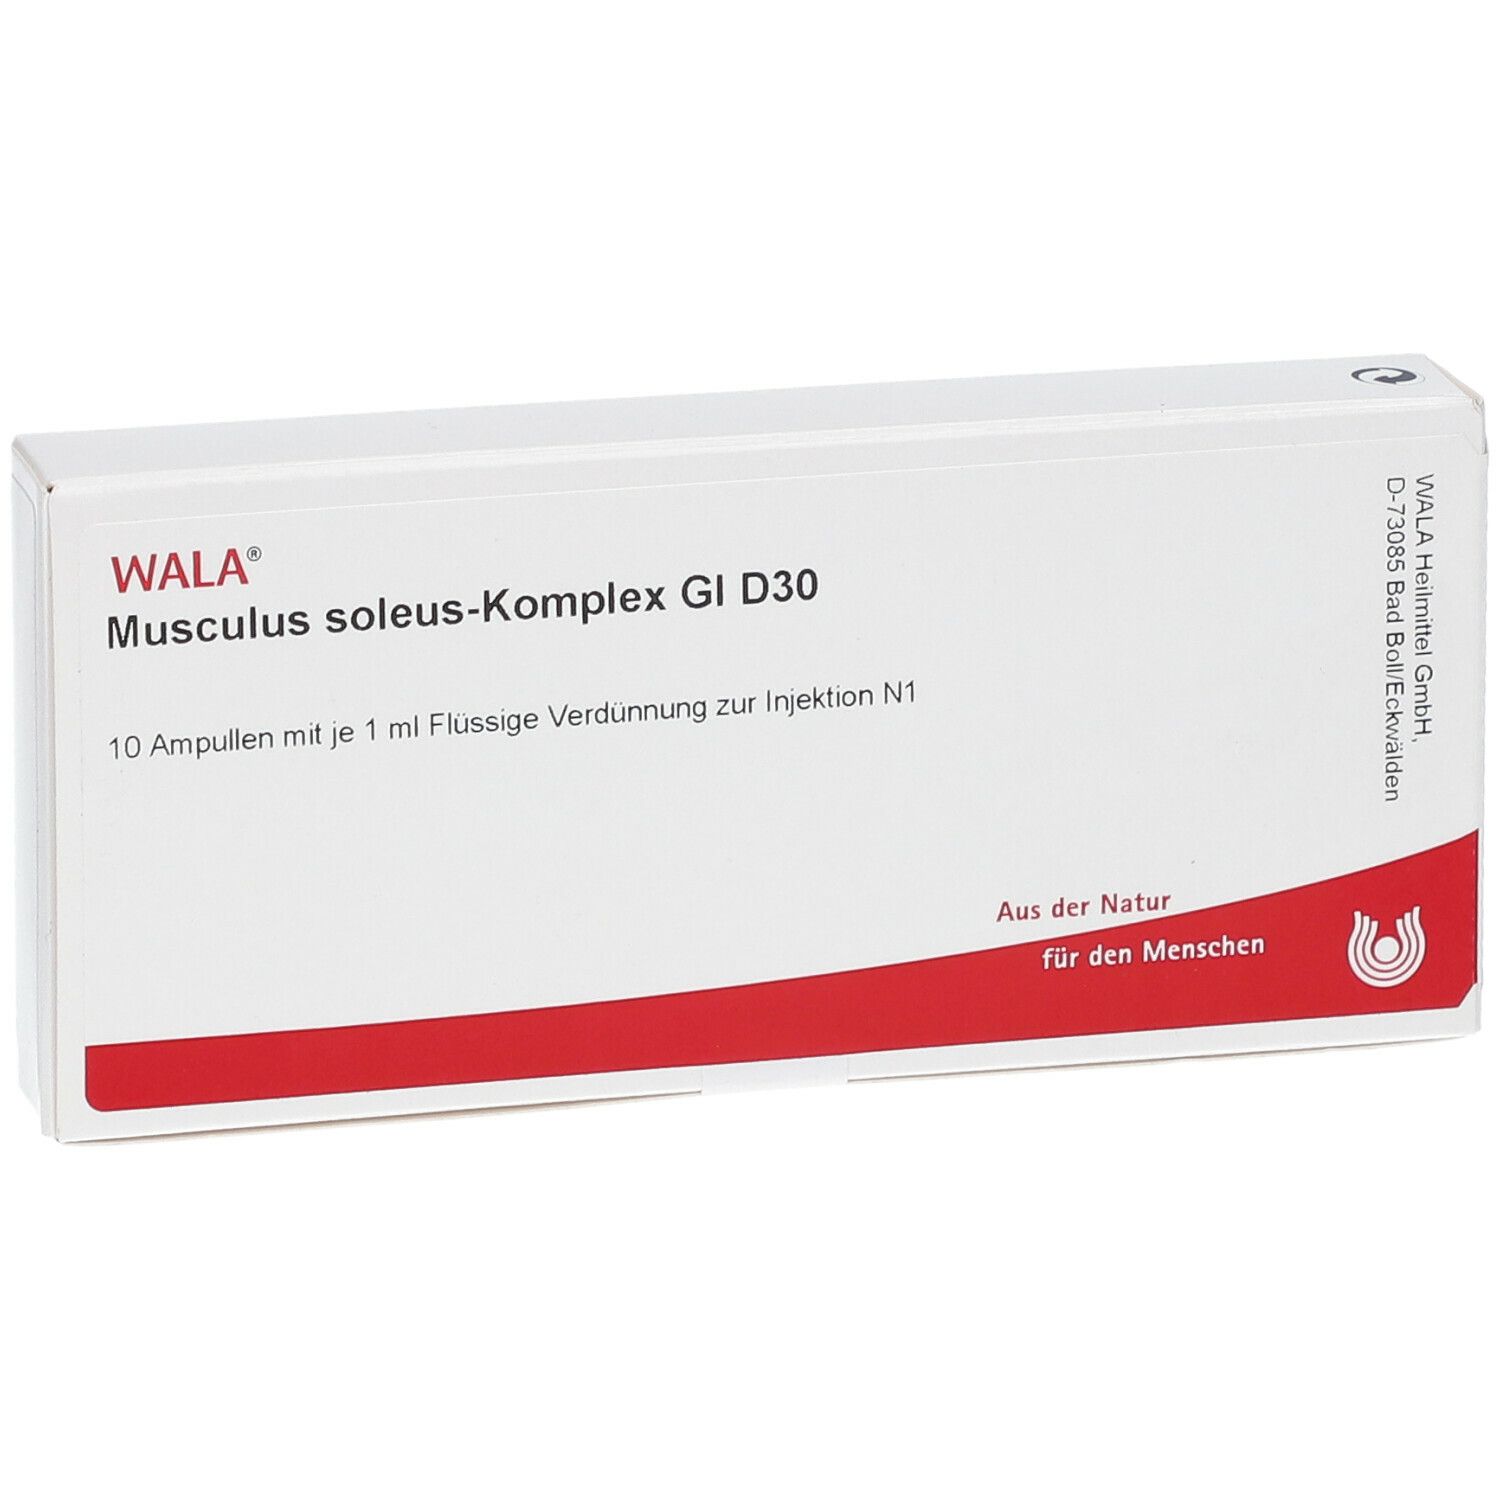 WALA® Musculus soleus-Komplex Gl D 30